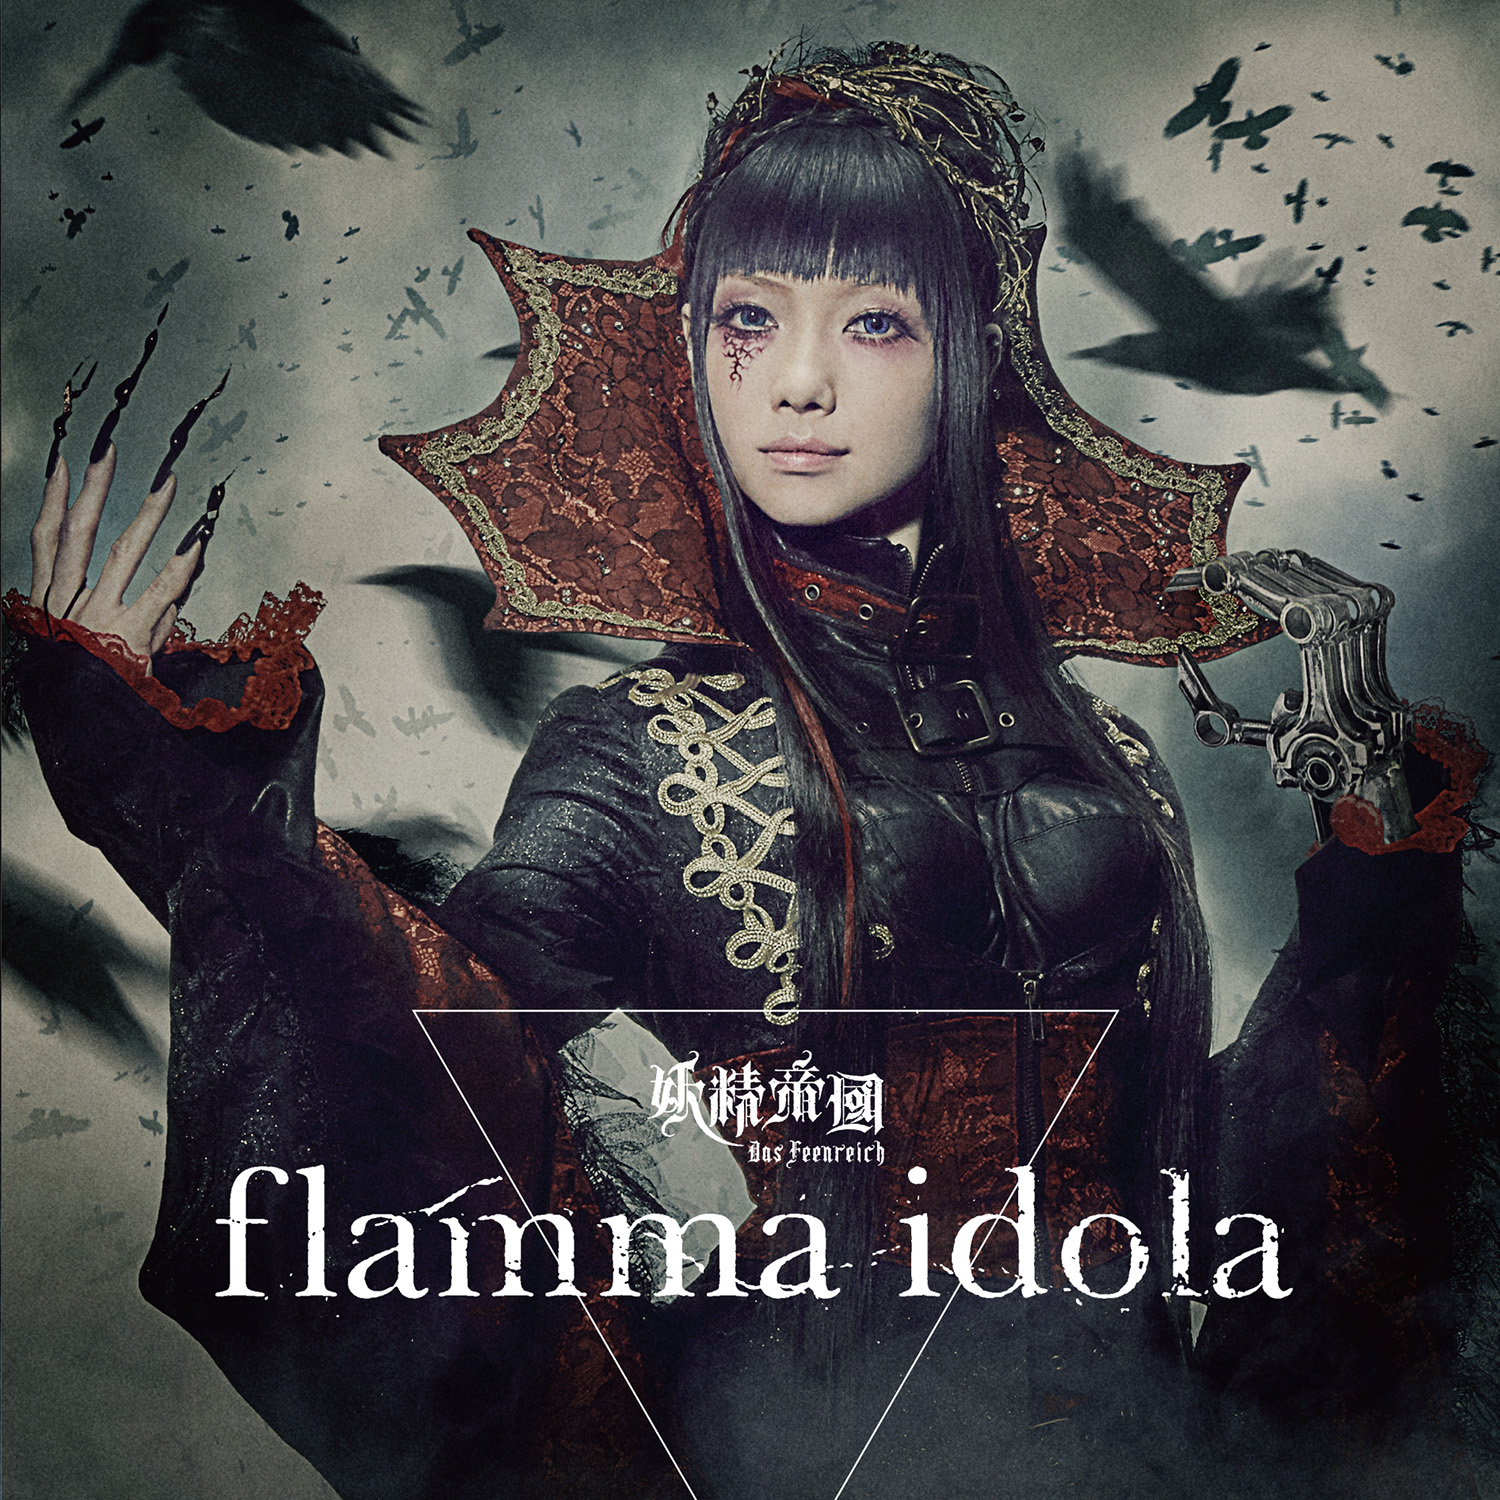 RMMS-Yousei-Teikoku-flamma-idola-jacket-1500